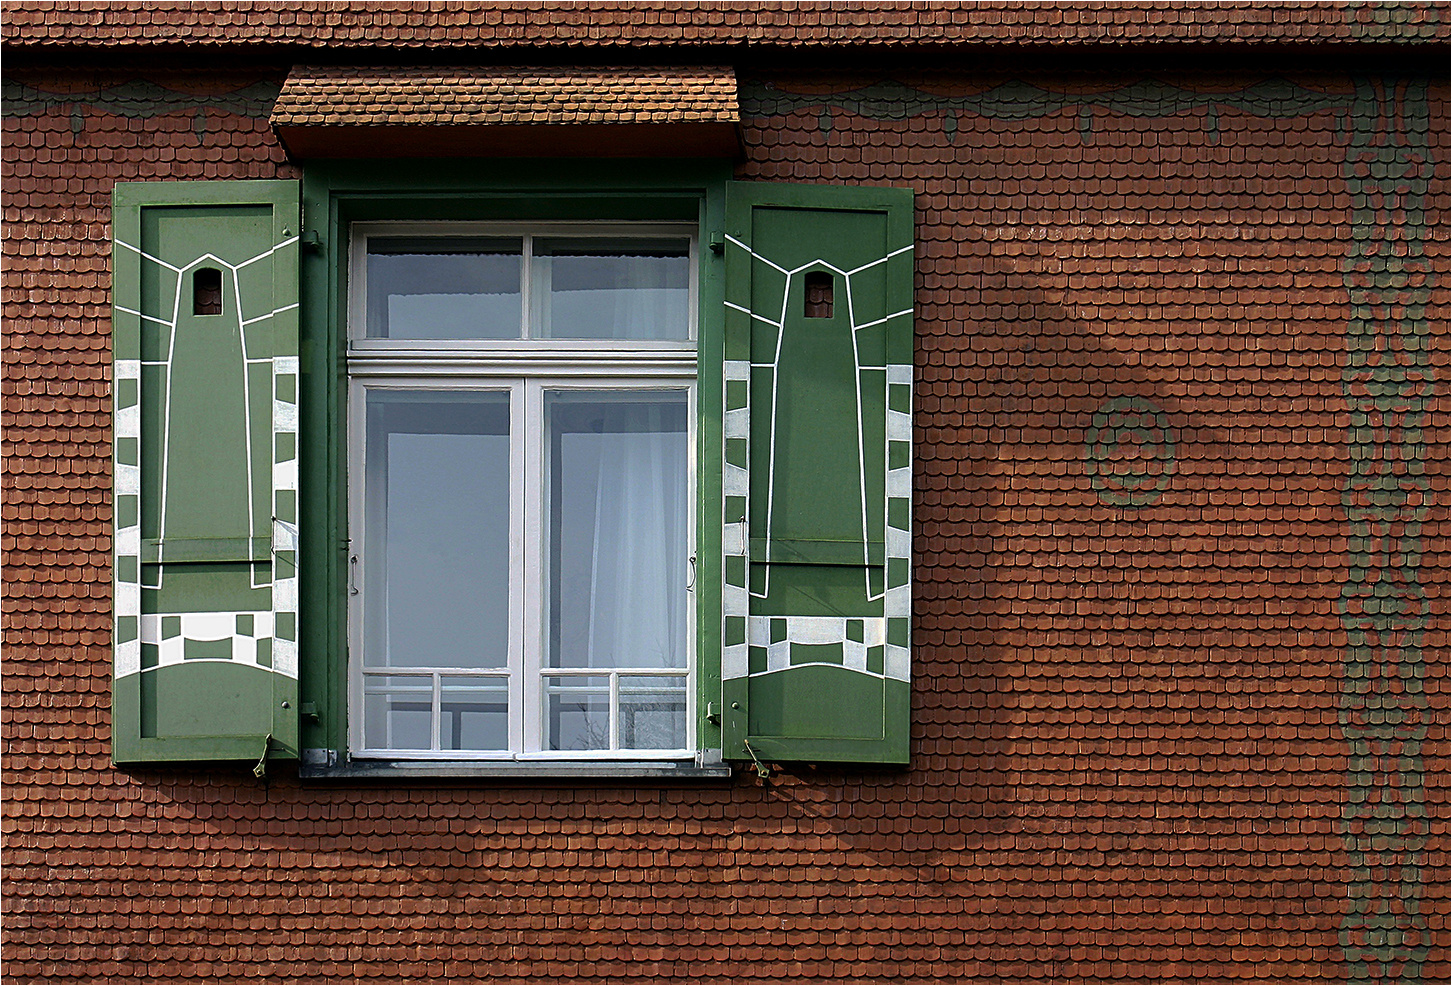 Der grüne Fensterladen